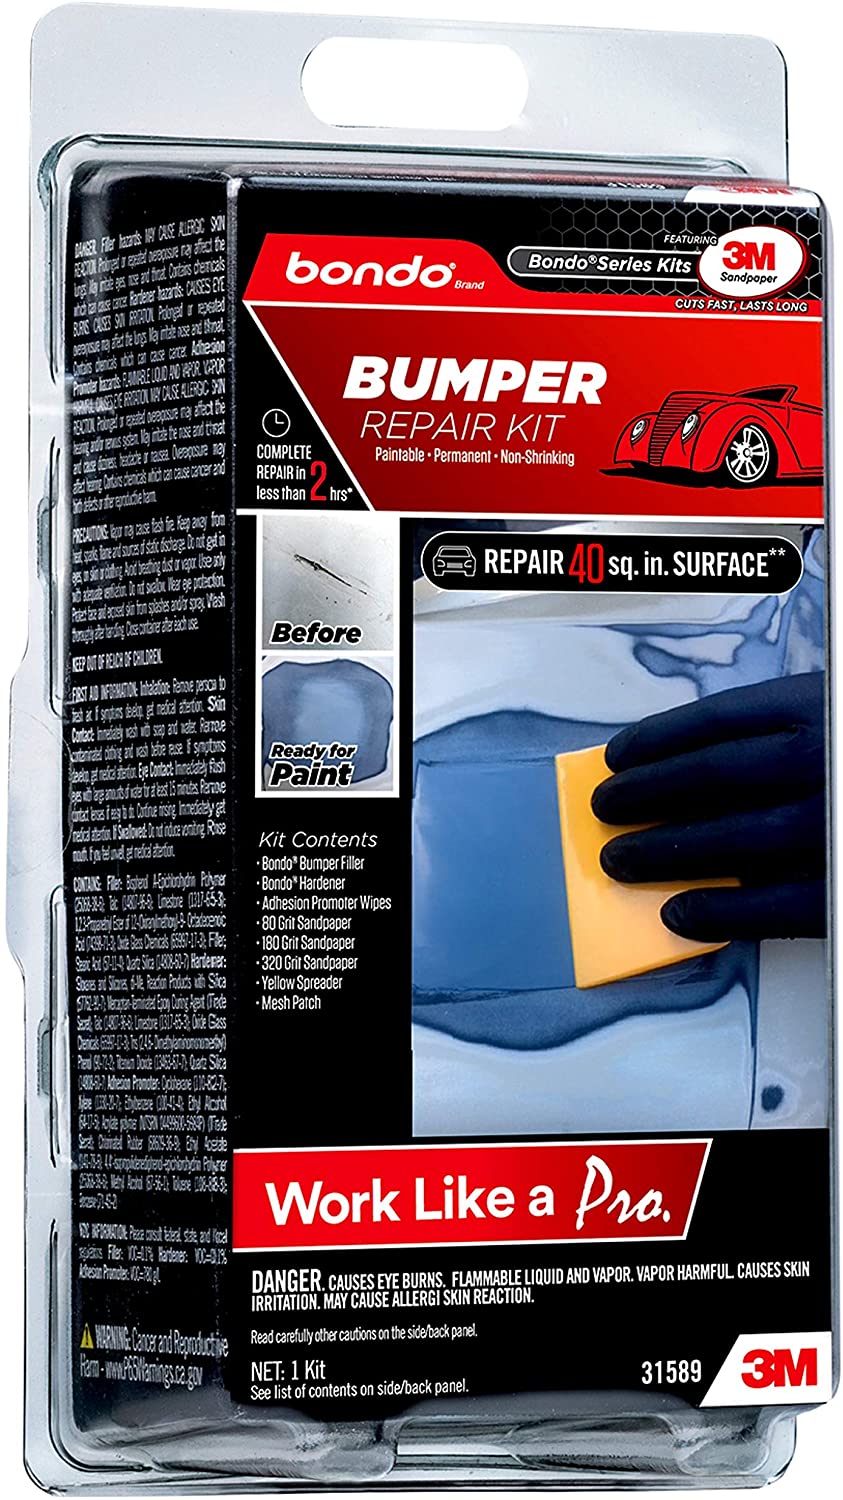 3M Bondo Bumper Repair Kit for Vehicles, Clamshell Pack #31589